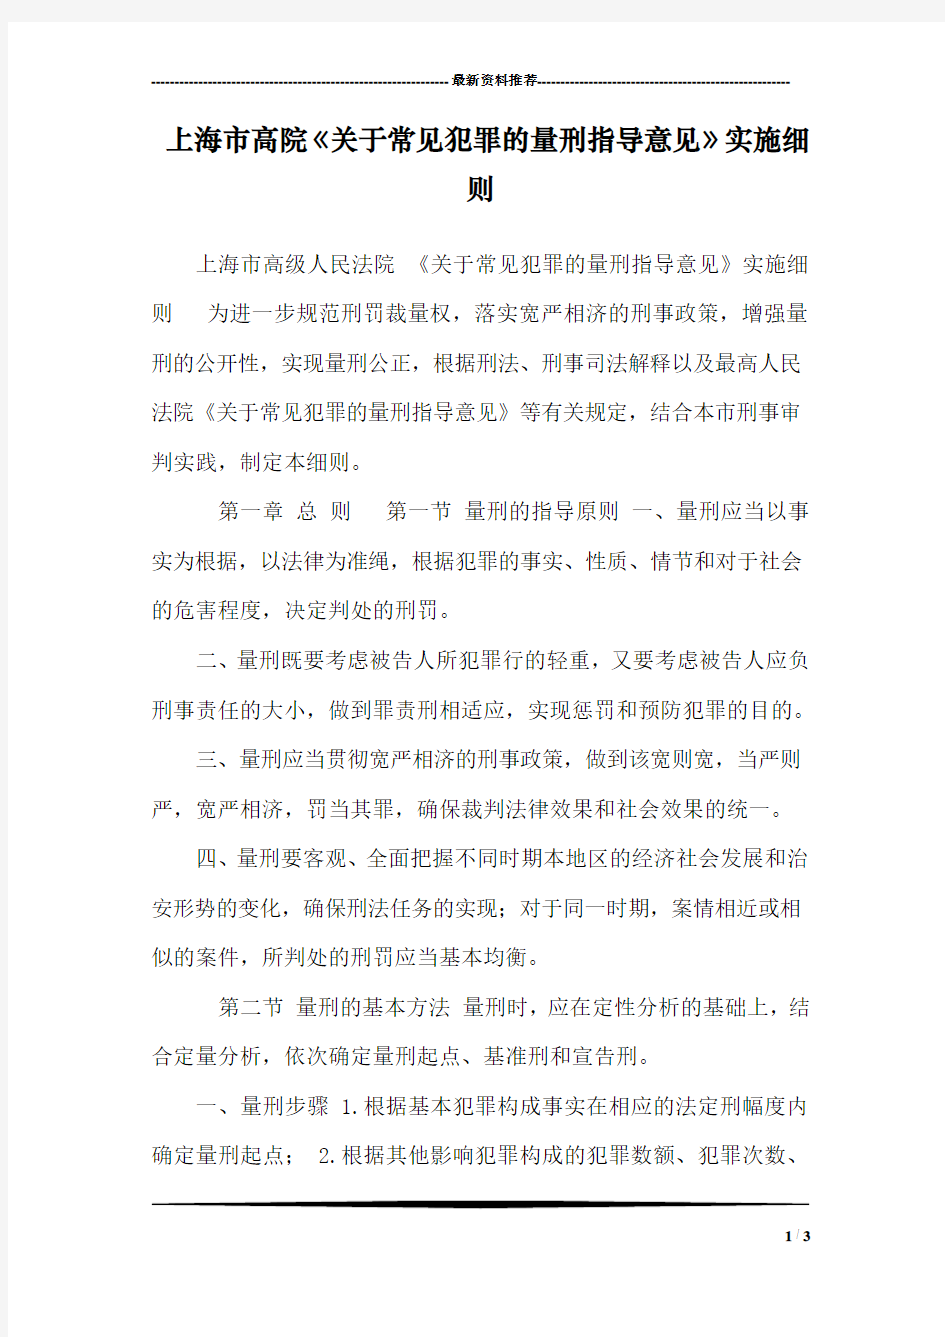 上海市高院《关于常见犯罪的量刑指导意见》实施细则